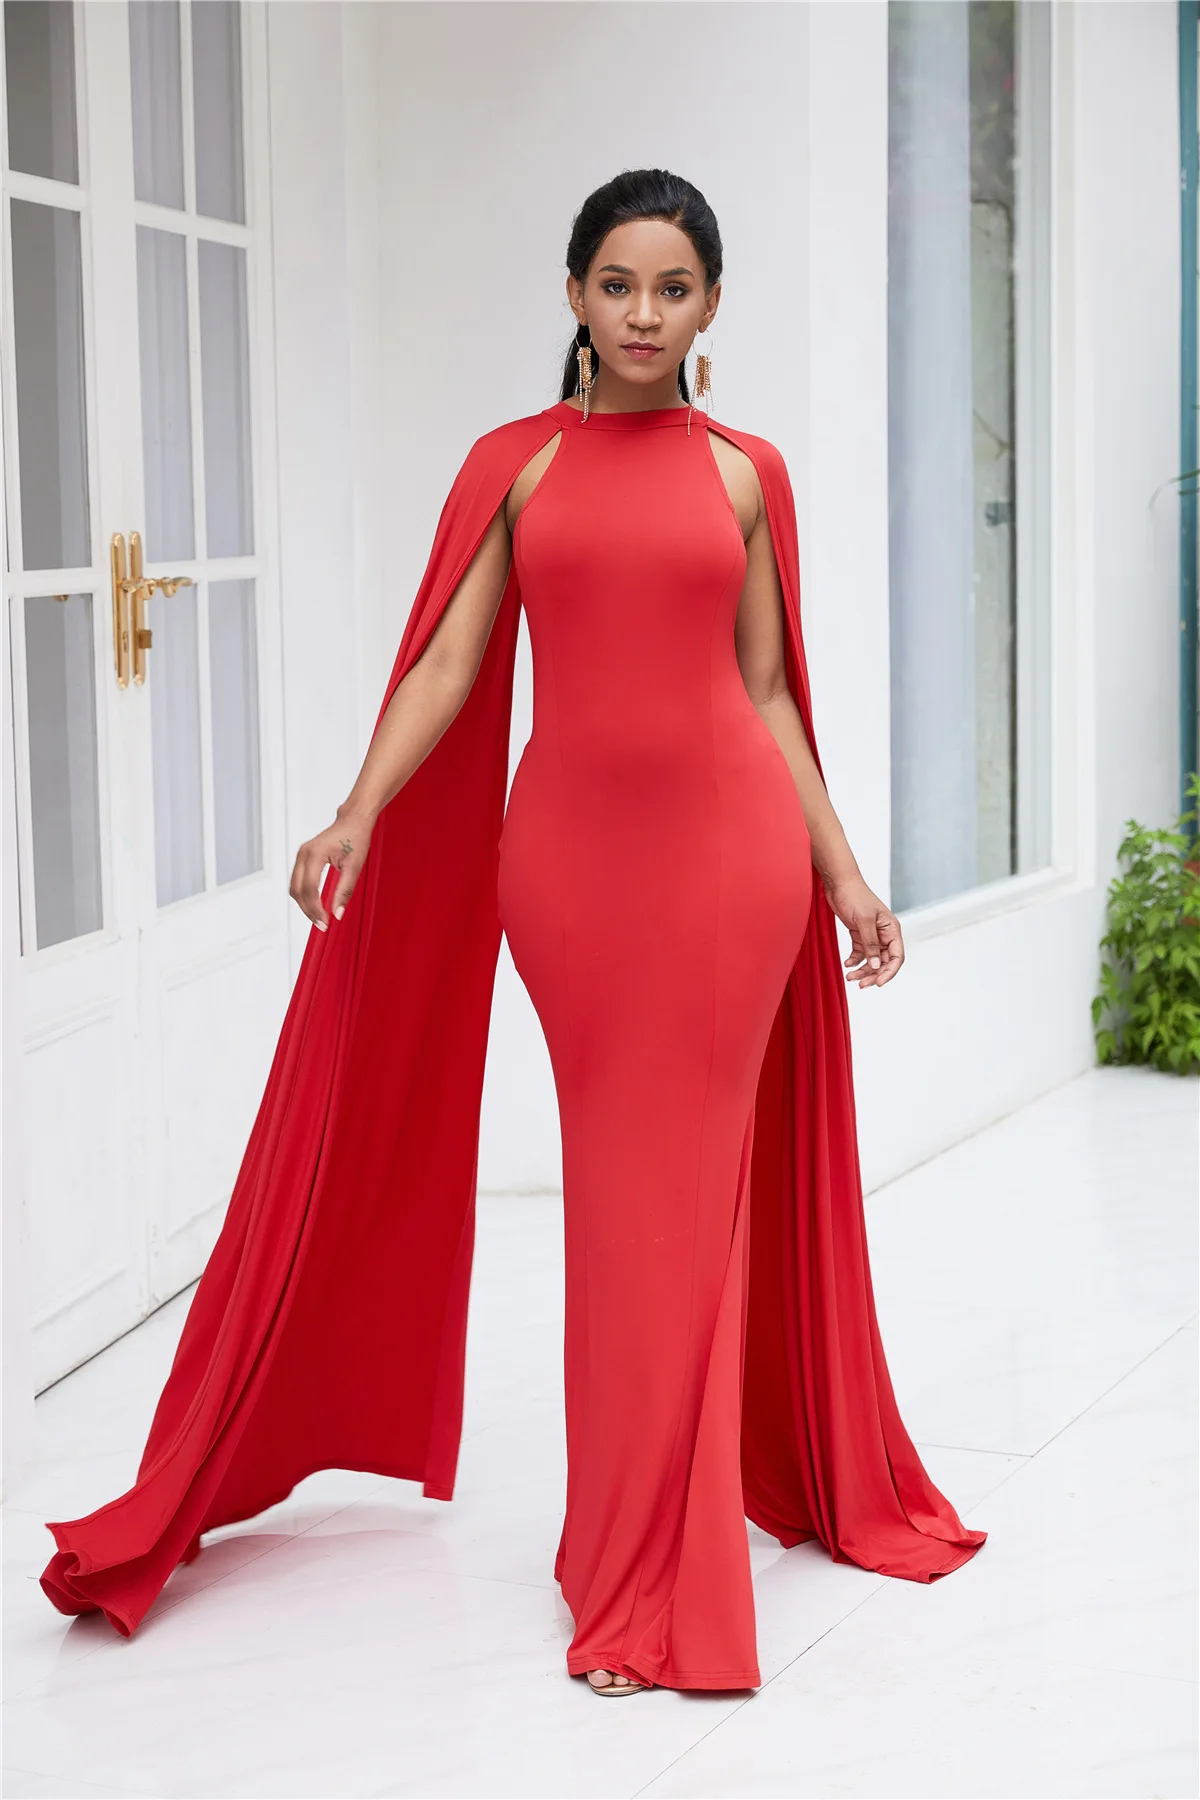 Африканская женская одежда бросился Лидер продаж Базен Riche рубашка в африканском стиле 2019 пикантные модные Стиль Африканский для женщин;